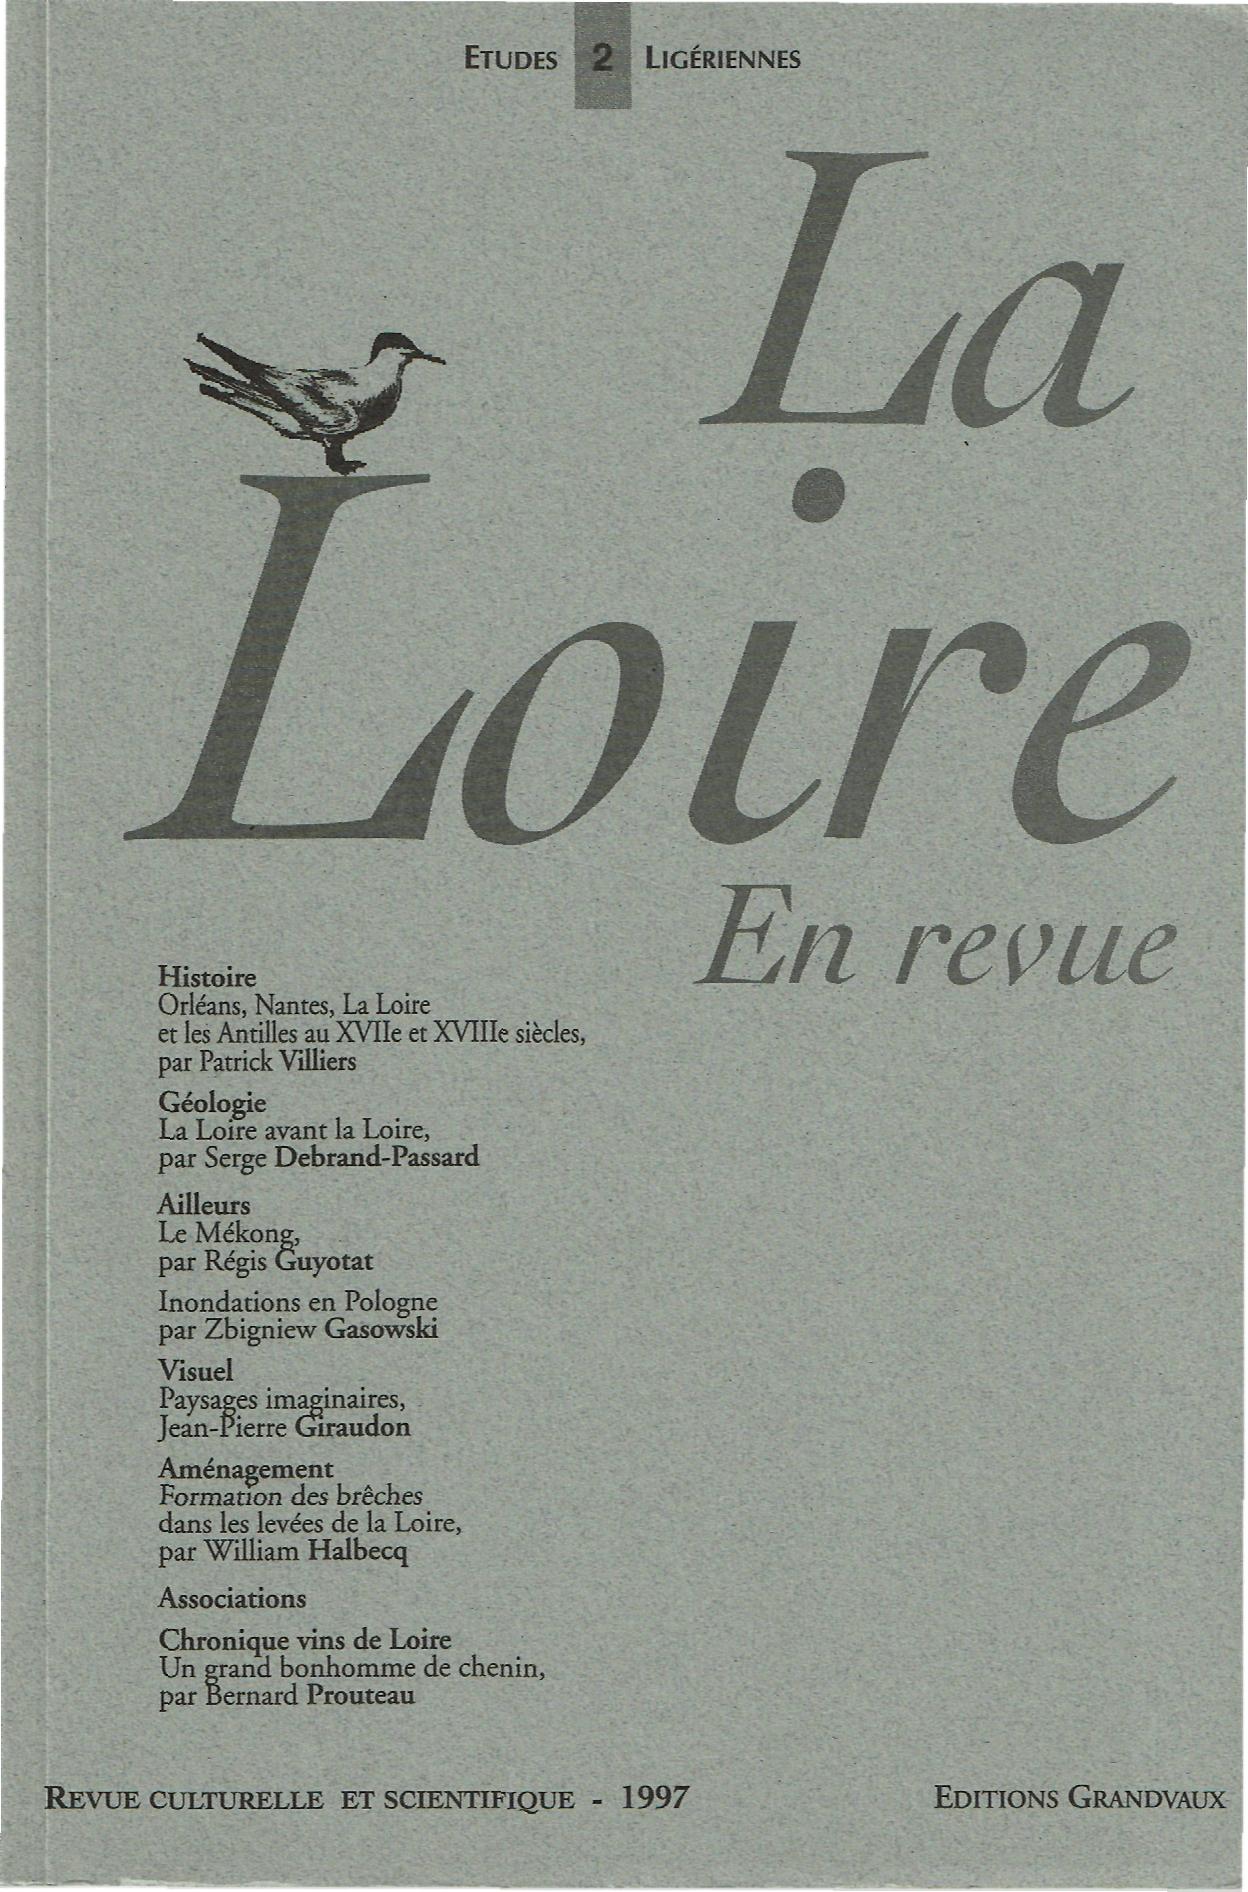 COLLECTIF La Loire en Revue N° 2